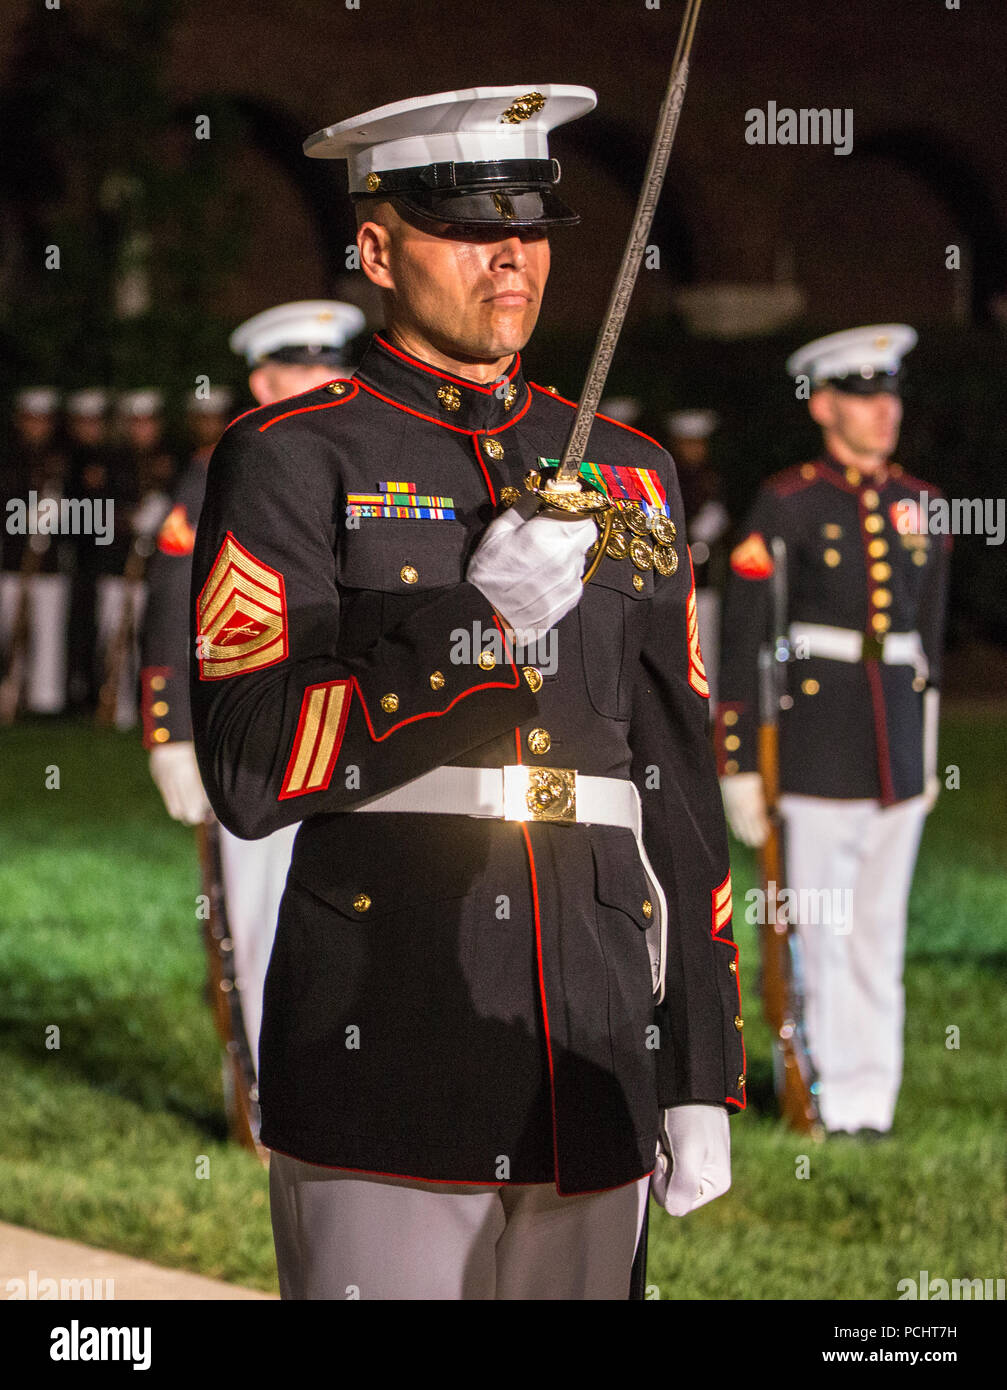 Gunnery Sgt. Michael Charneske, platoon Sergeant, US Marine Corps leise Bohren Platoon, macht ein Schwert salute während des Staff-Noncommissioned Officer Freitag Abend Parade bei Marine Barracks Washington D.C., 27. Juli 2018. Während der NATURSCHUTZBEHÖRDE Freitag Abend Parade, NATURSCHUTZBEHÖRDE der Knüppel von wichtigen Führungskräften' marching Positionen in der Regel von den Offizieren und Unteroffizieren nicht übernehmen. Charneske übernahm die Position der SDP Platoon Commander für die Parade. Stockfoto